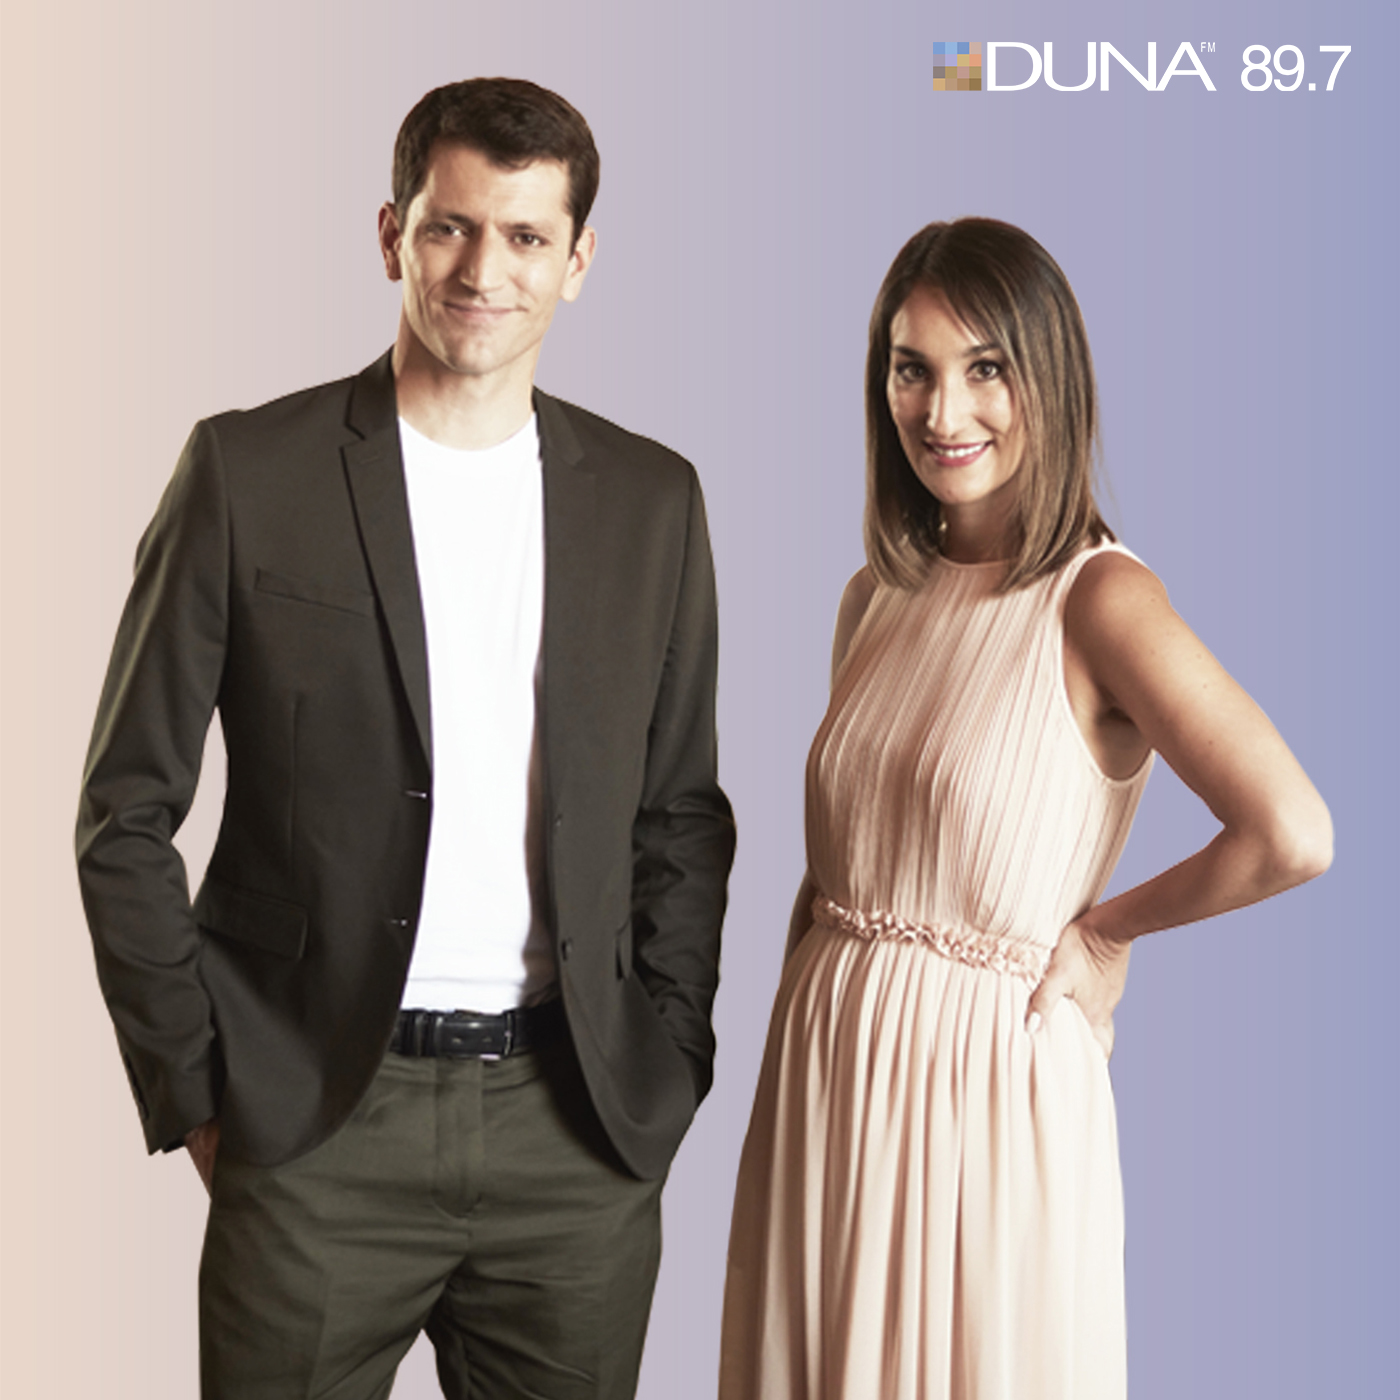 Radio Duna | Noticias en Duna